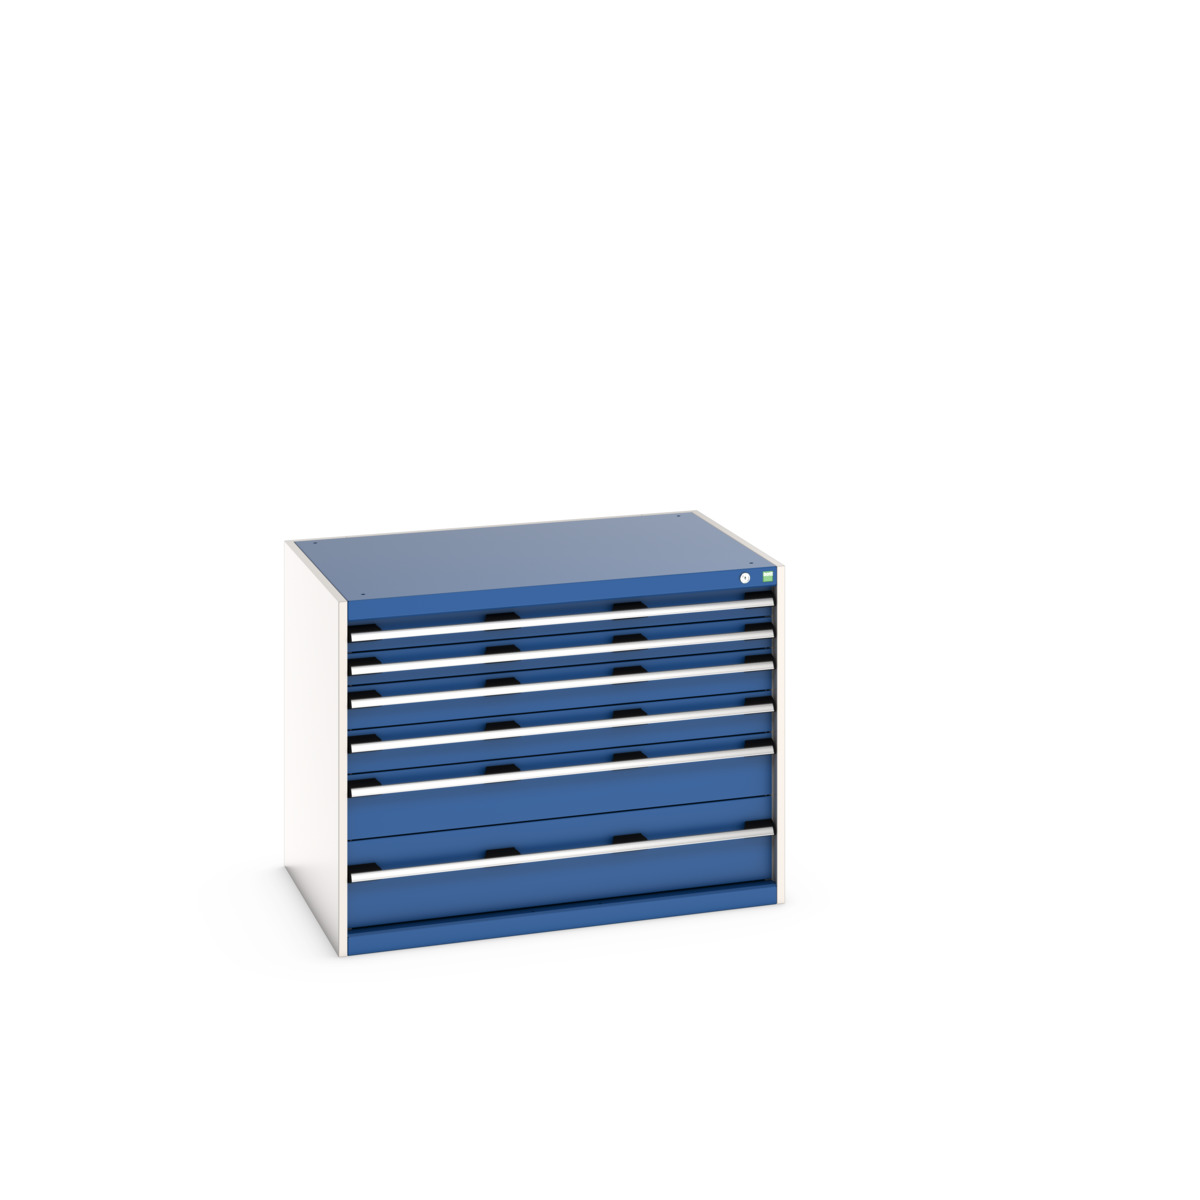 40029086.11V - cubio drawer cabinet